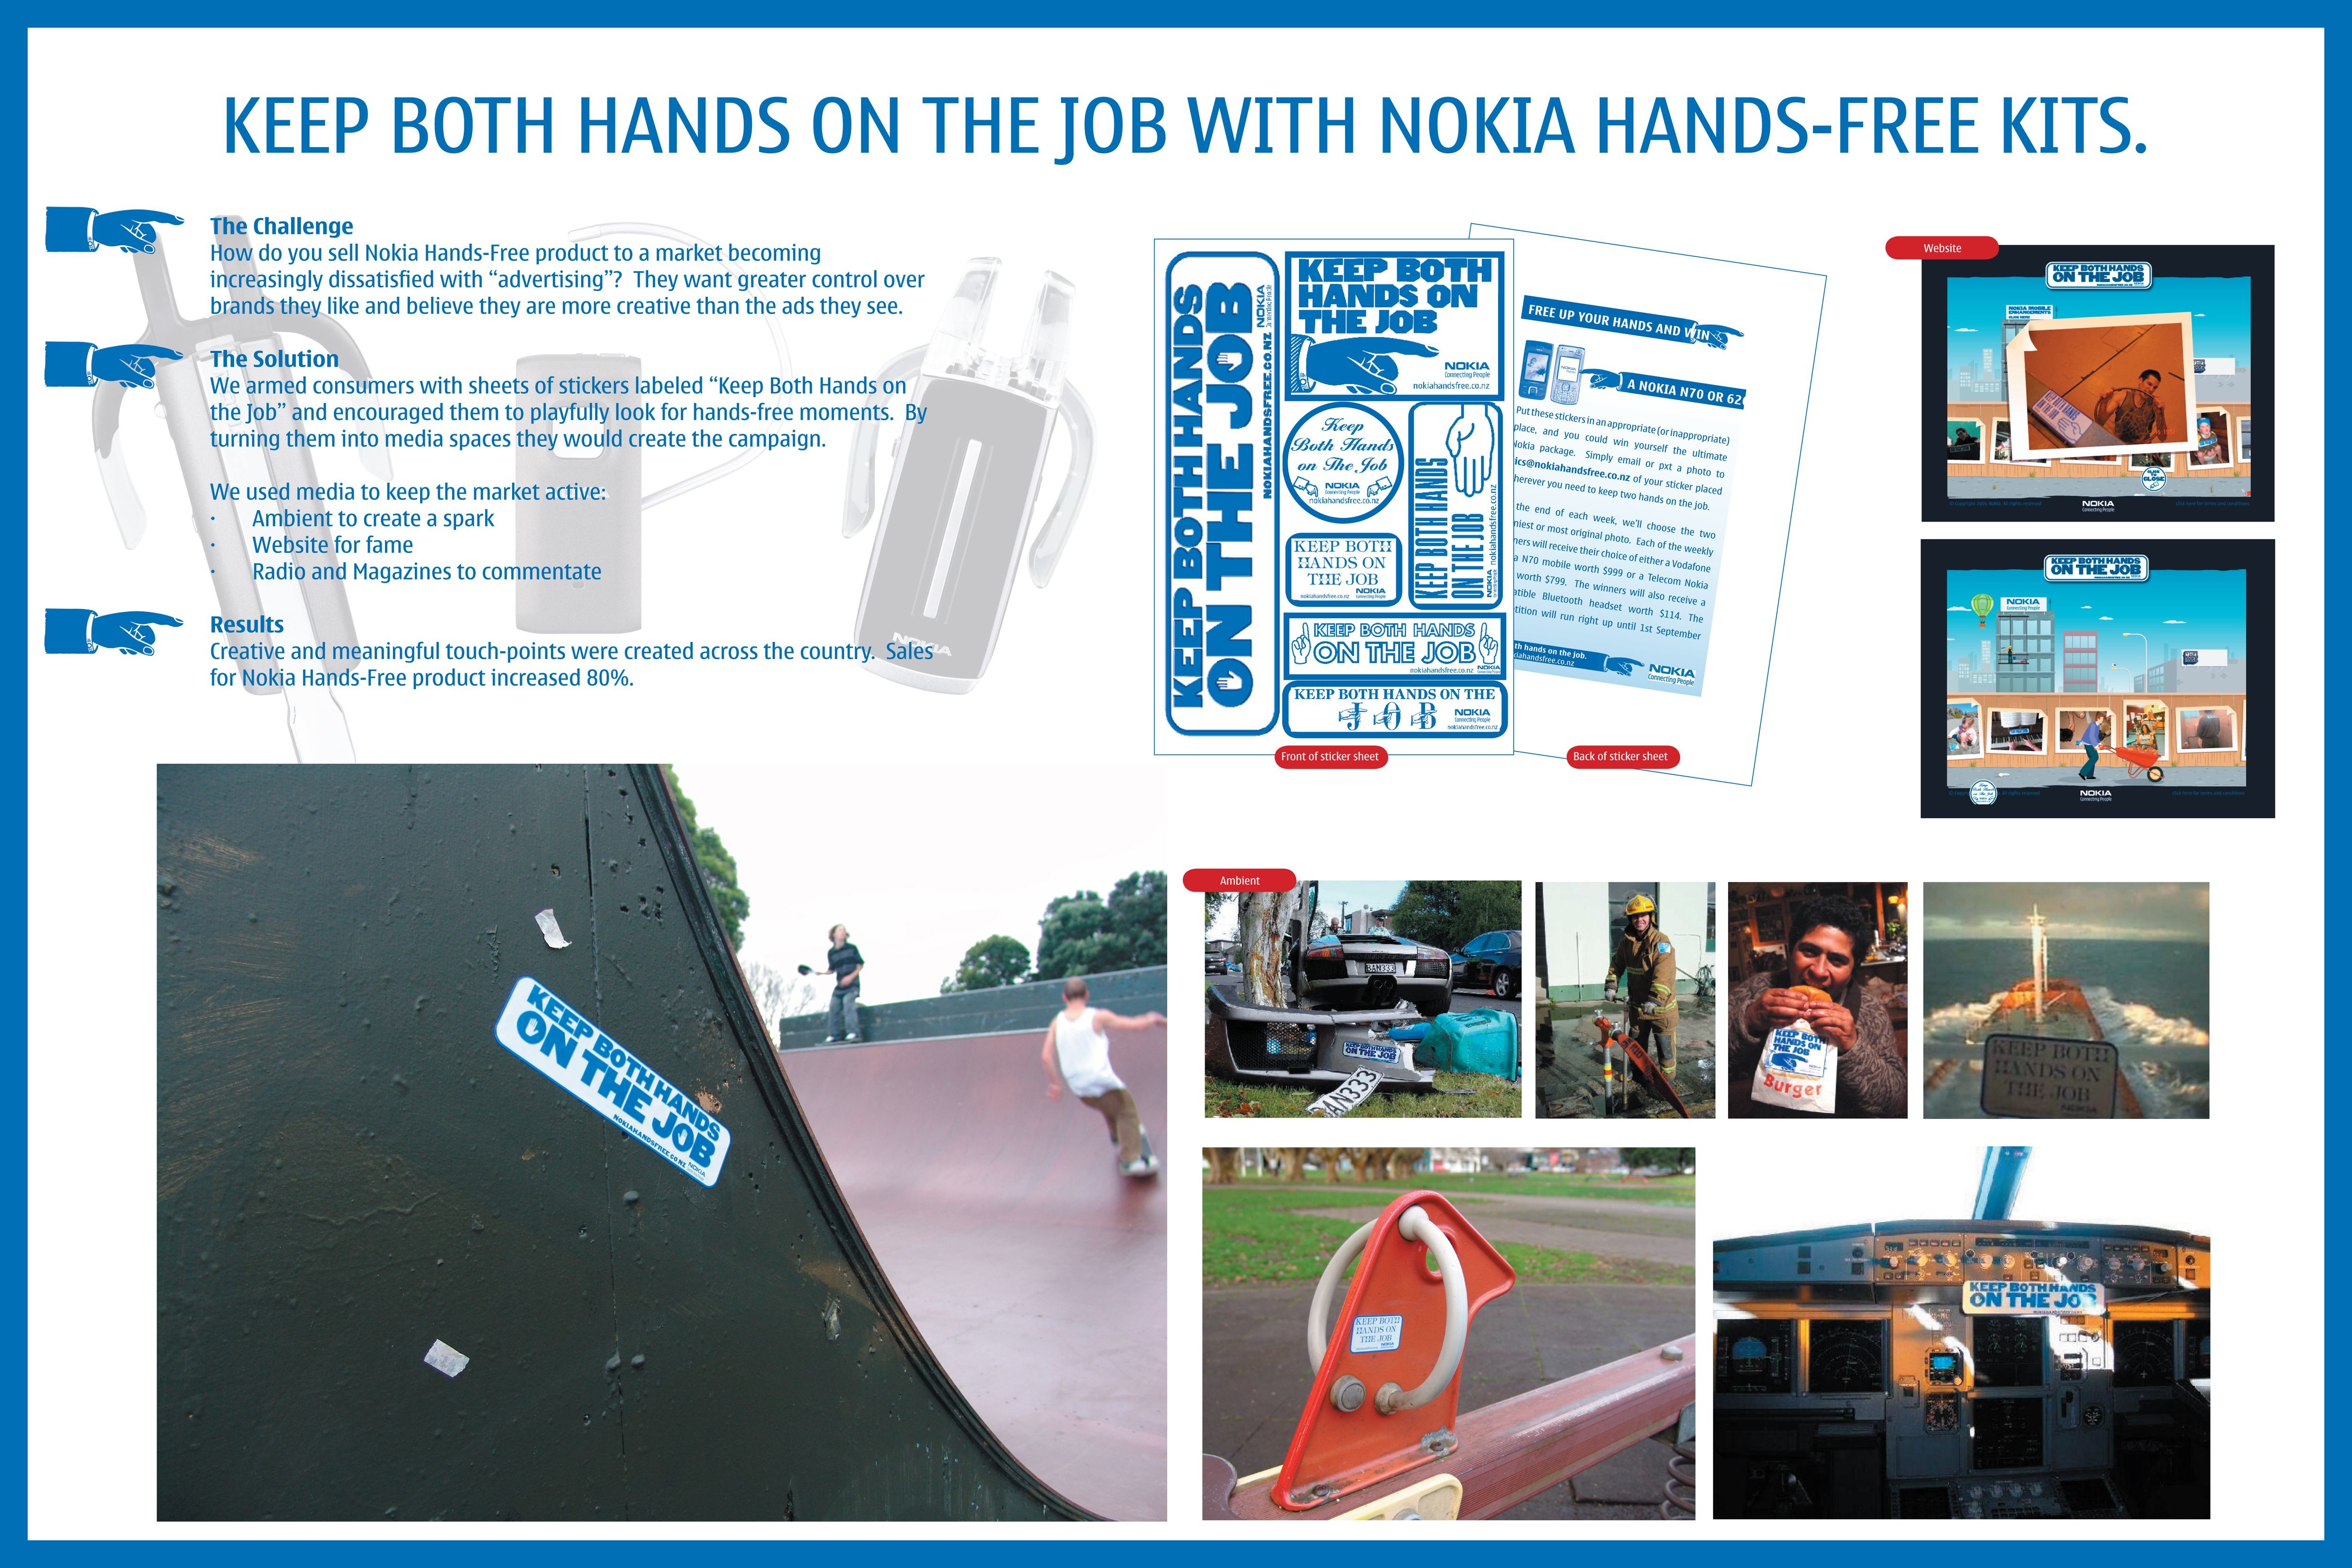 NOKIA HANDS-FREE KITS